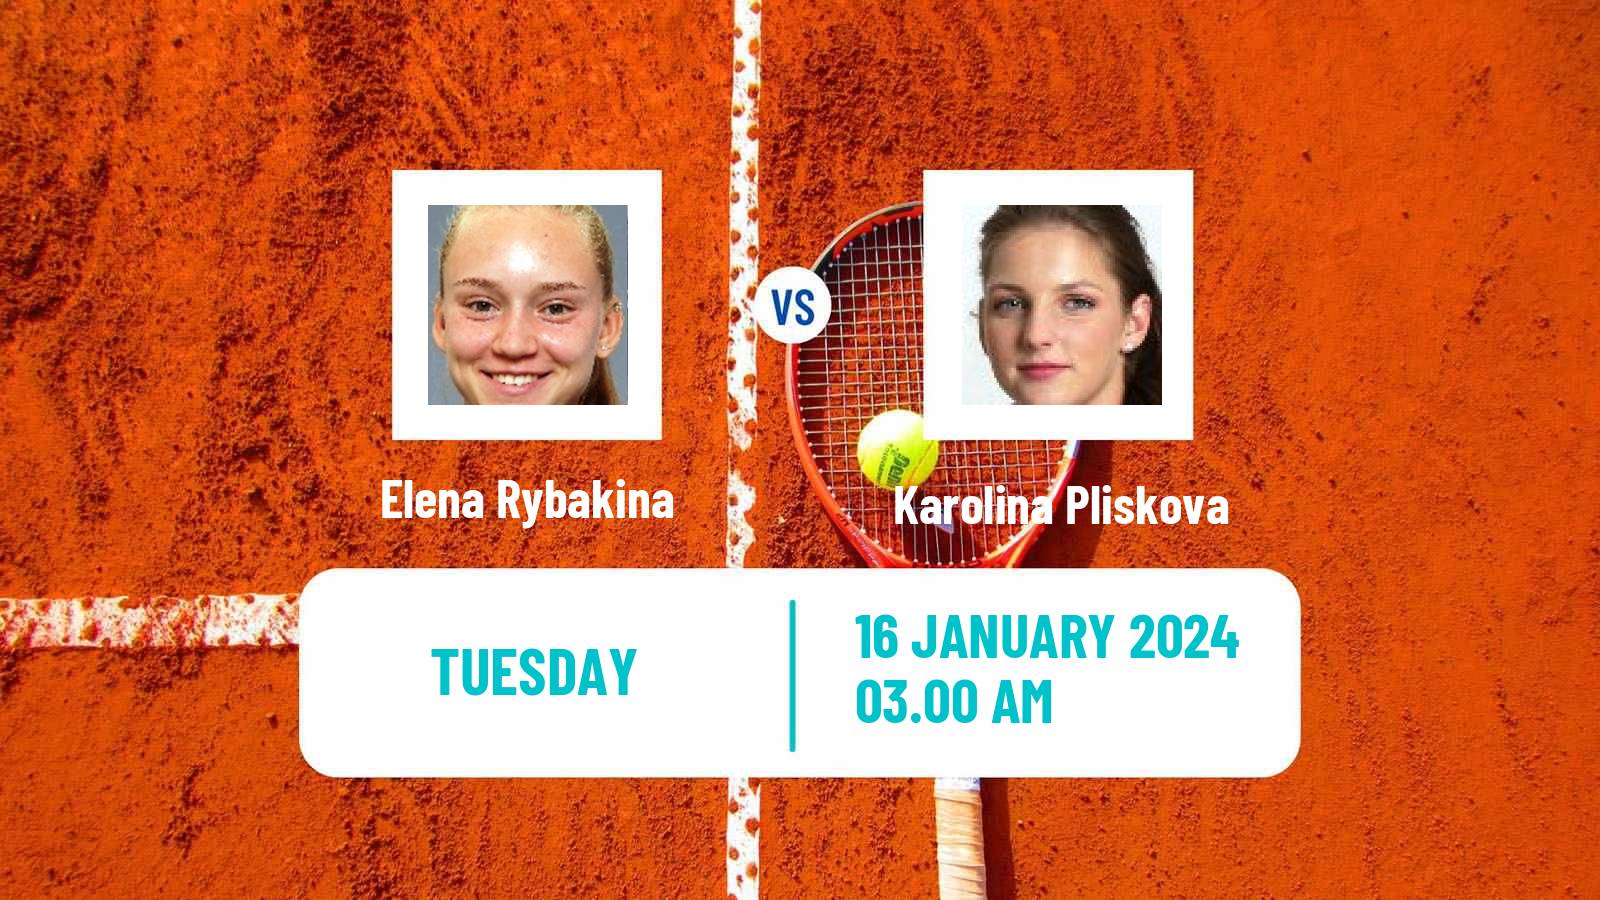 Tennis WTA Australian Open Elena Rybakina - Karolina Pliskova